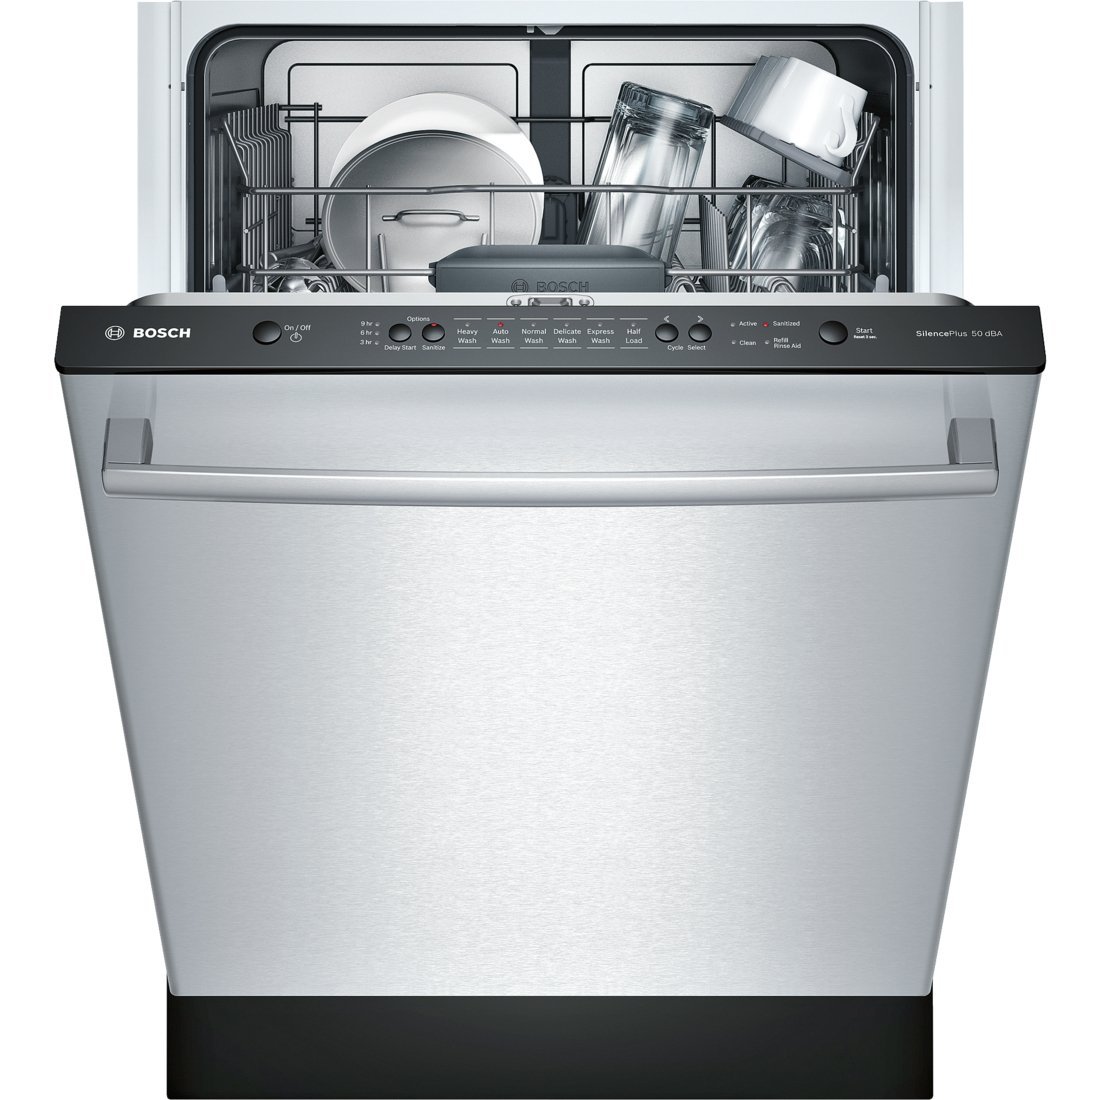  Bosch SHX3AR75UC Ascenta 24 'ワイド完全統合型ビルトイン食器洗い機（6回の洗浄サイクル）14場所設定遅延開始24/7オーバーフローリークプロテクションス...